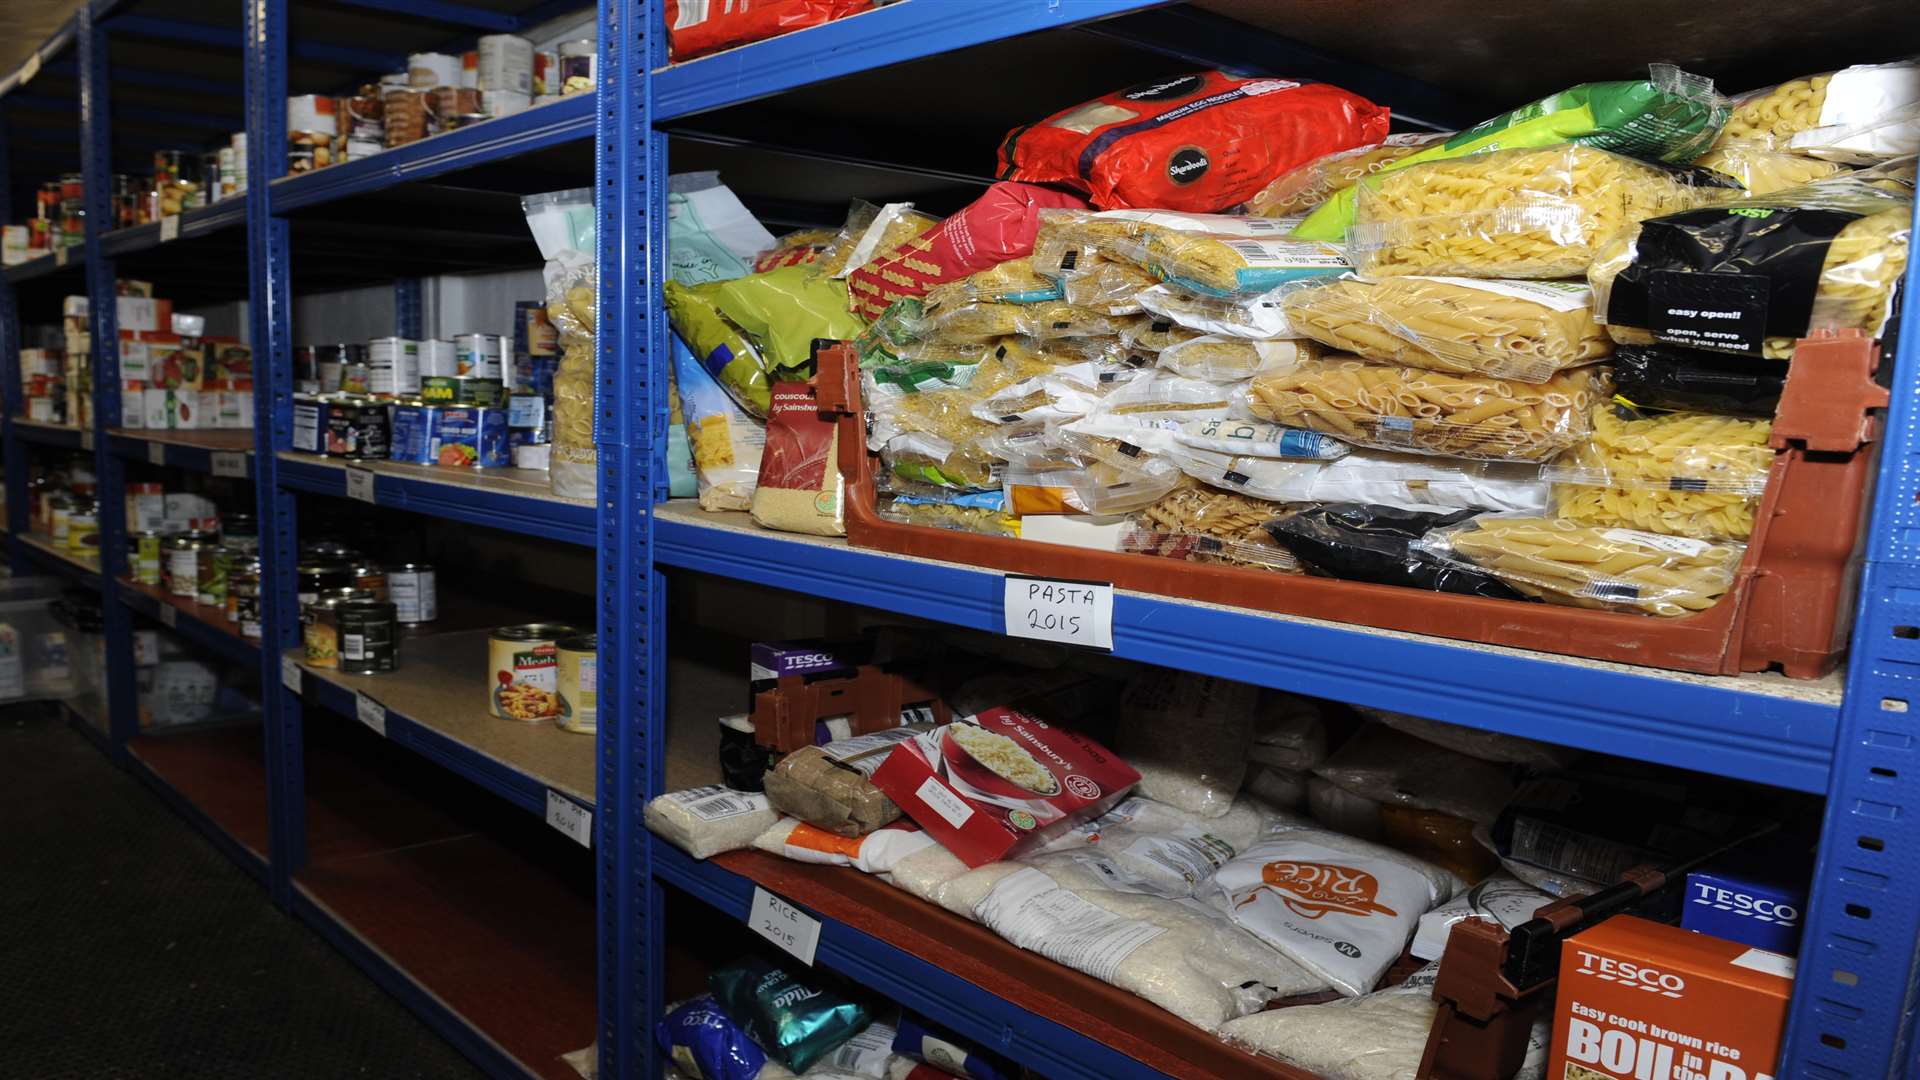 Food banks are seeing increasing demand in Kent